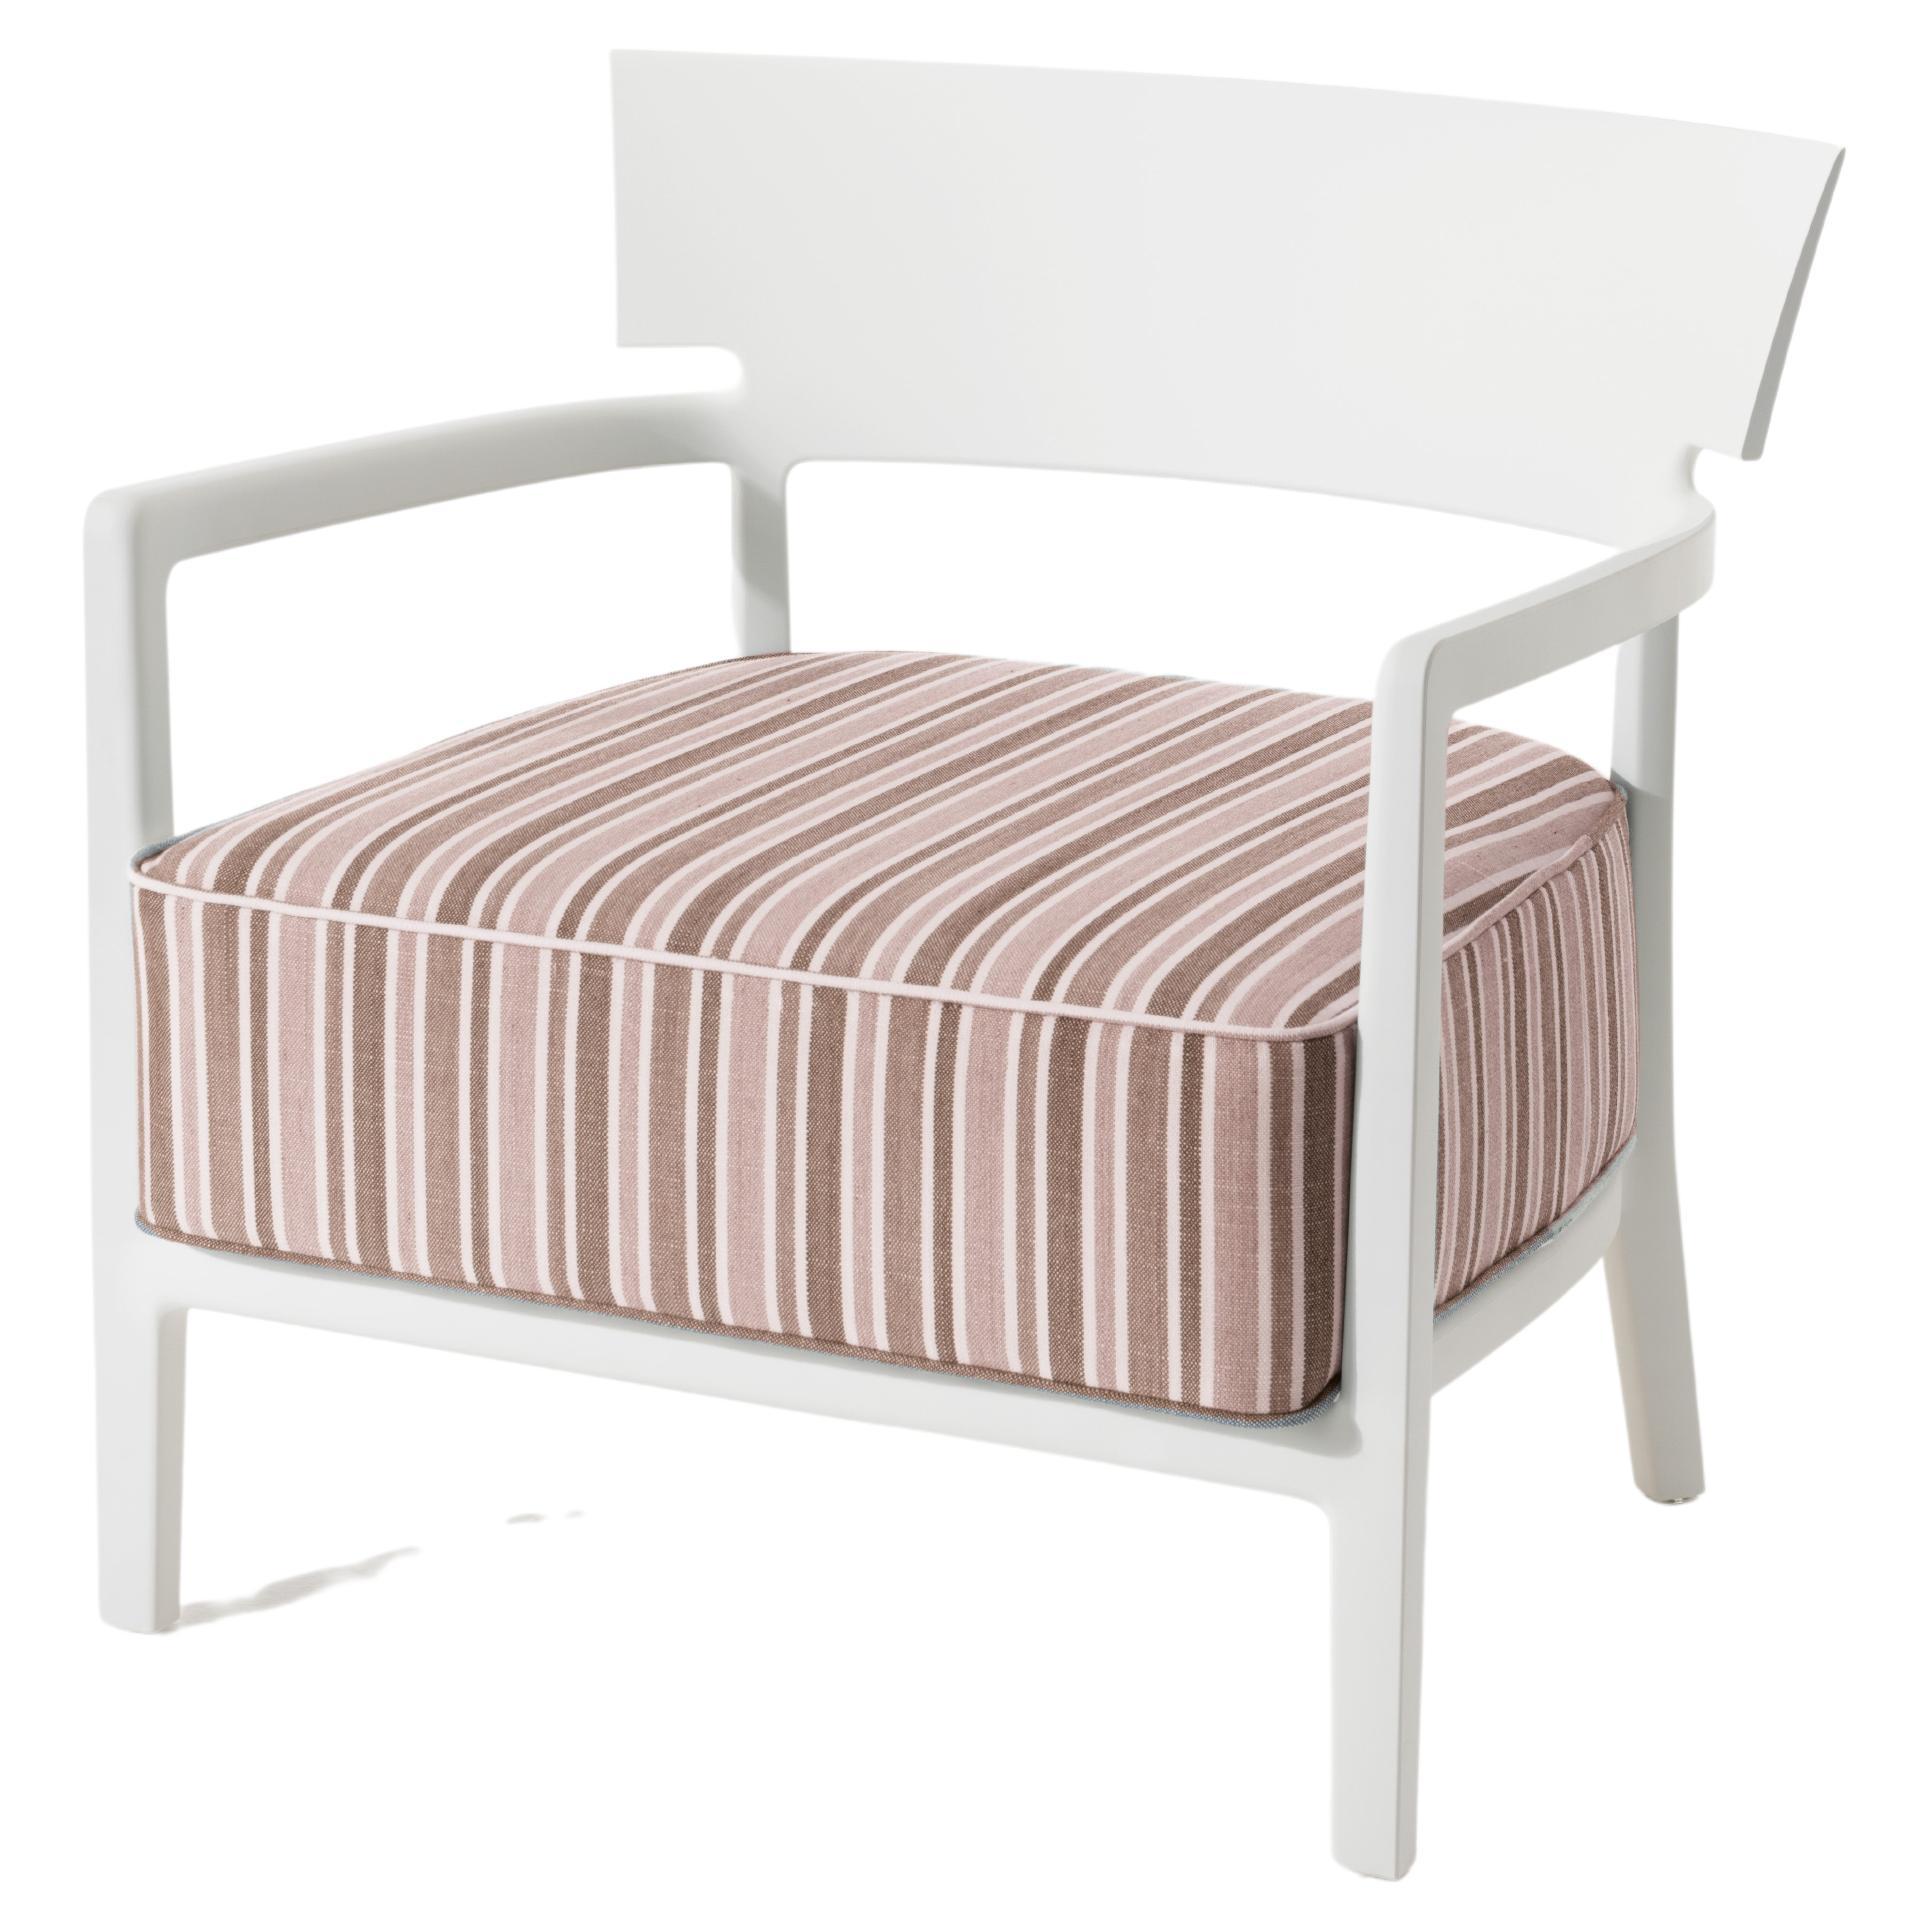  Cara ist der Sessel für das Wohnzimmer, der die Strenge der klassischen Linien mit dem Komfort des Sitzes verbindet, der sich durch das große, hohe Kissen auszeichnet, das maximalen Komfort bietet. 
Cara ist sowohl für den Innen- als auch für den